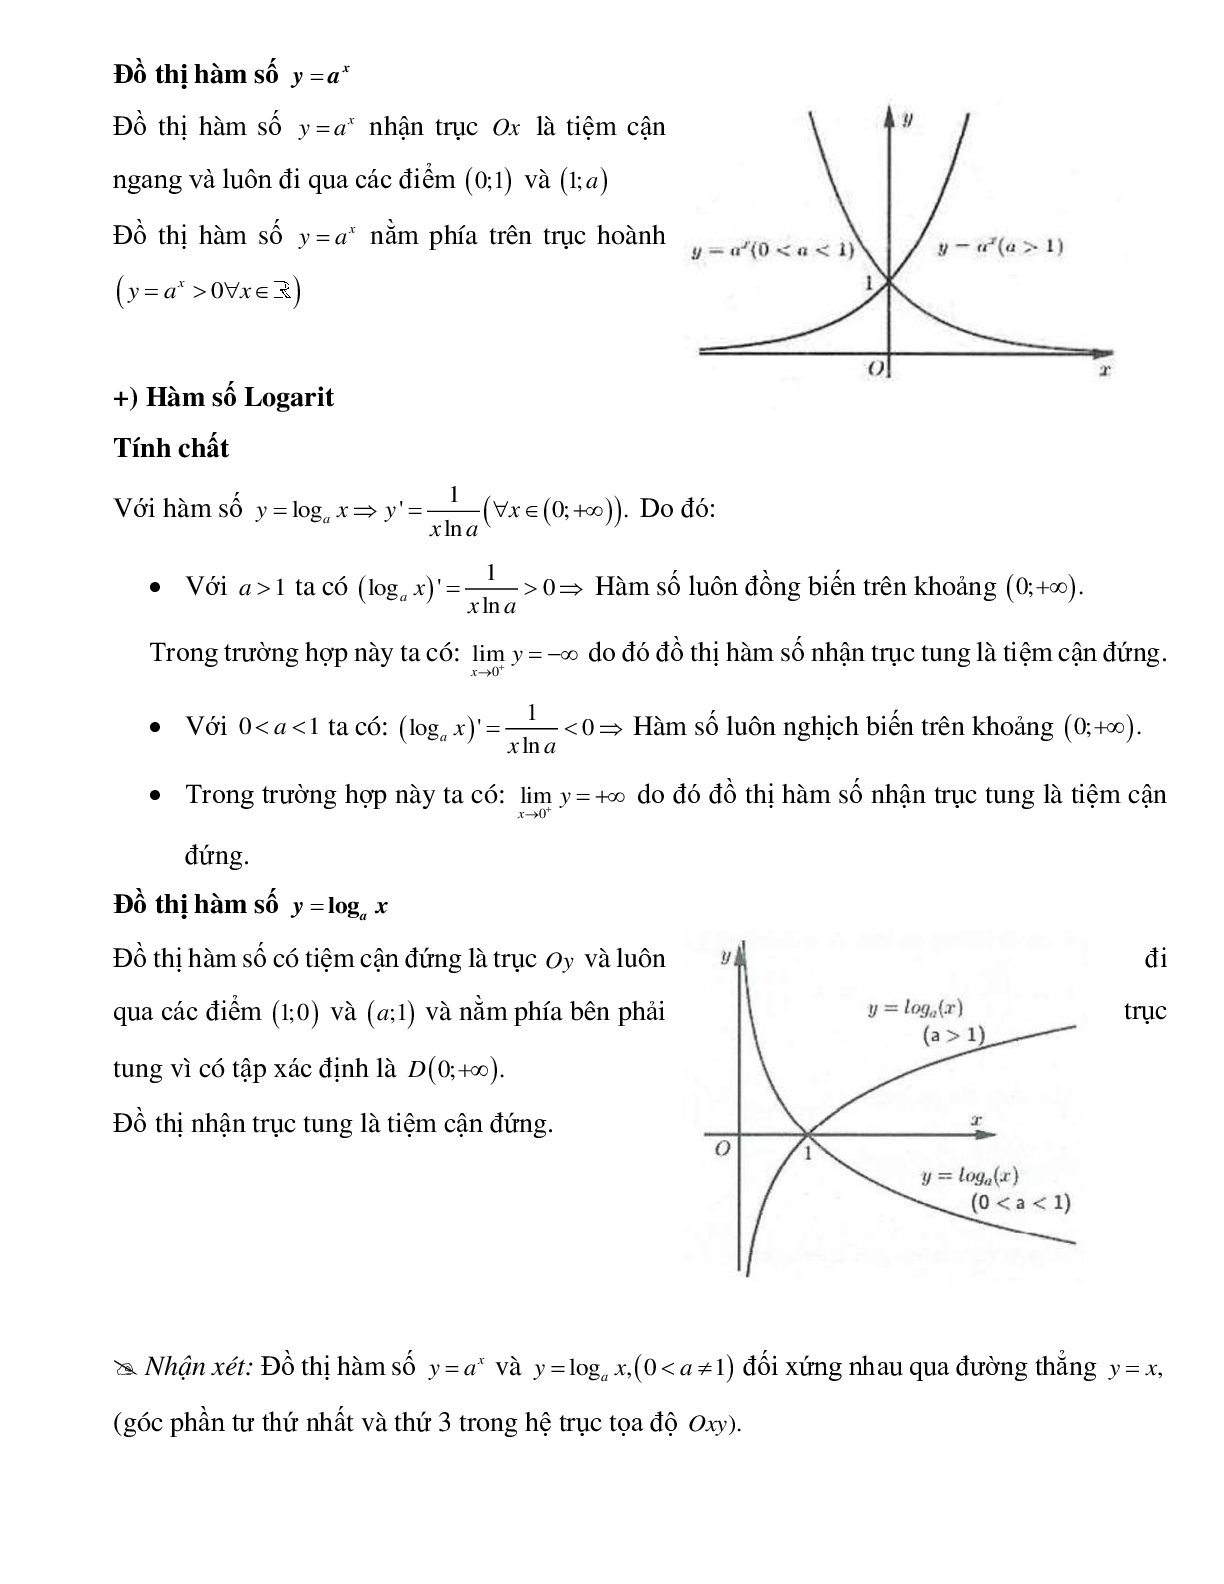 Bài tập về Đồ thị hàm lũy thừa, hàm số mũ, hàm số logarit chọn lọc (trang 2)